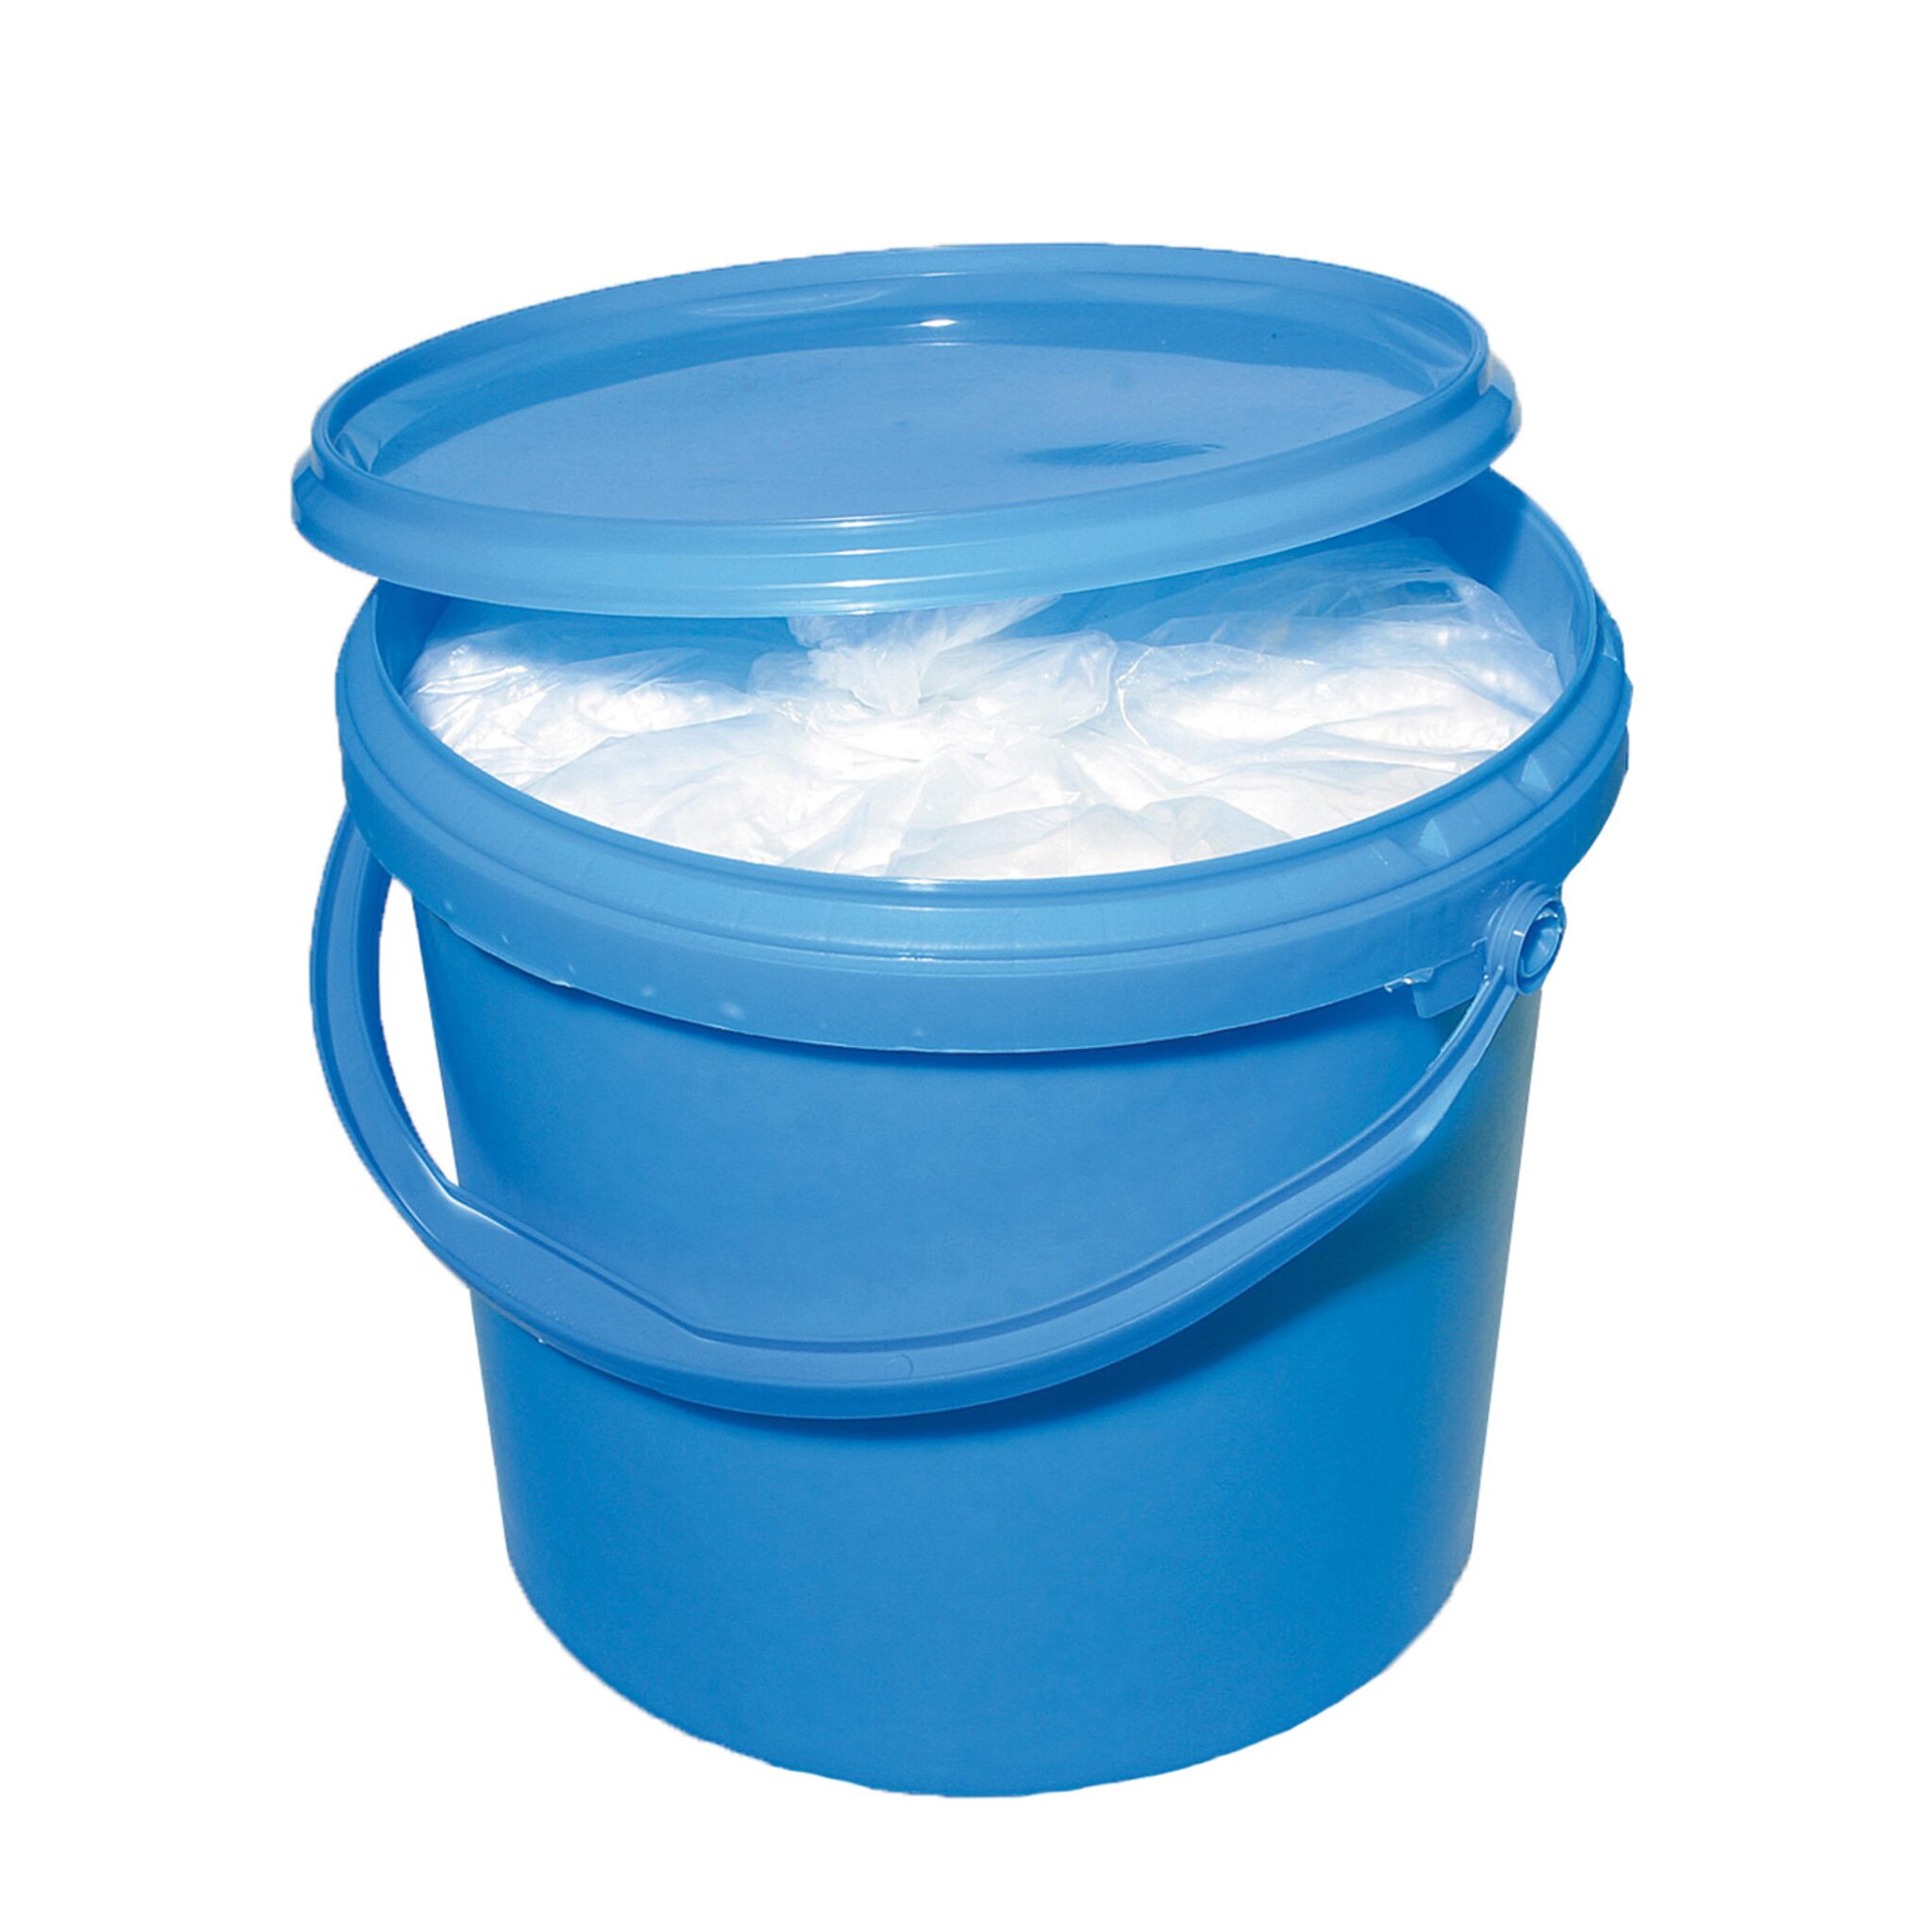 awn refill granules for room dehumidifier box, 5 kg